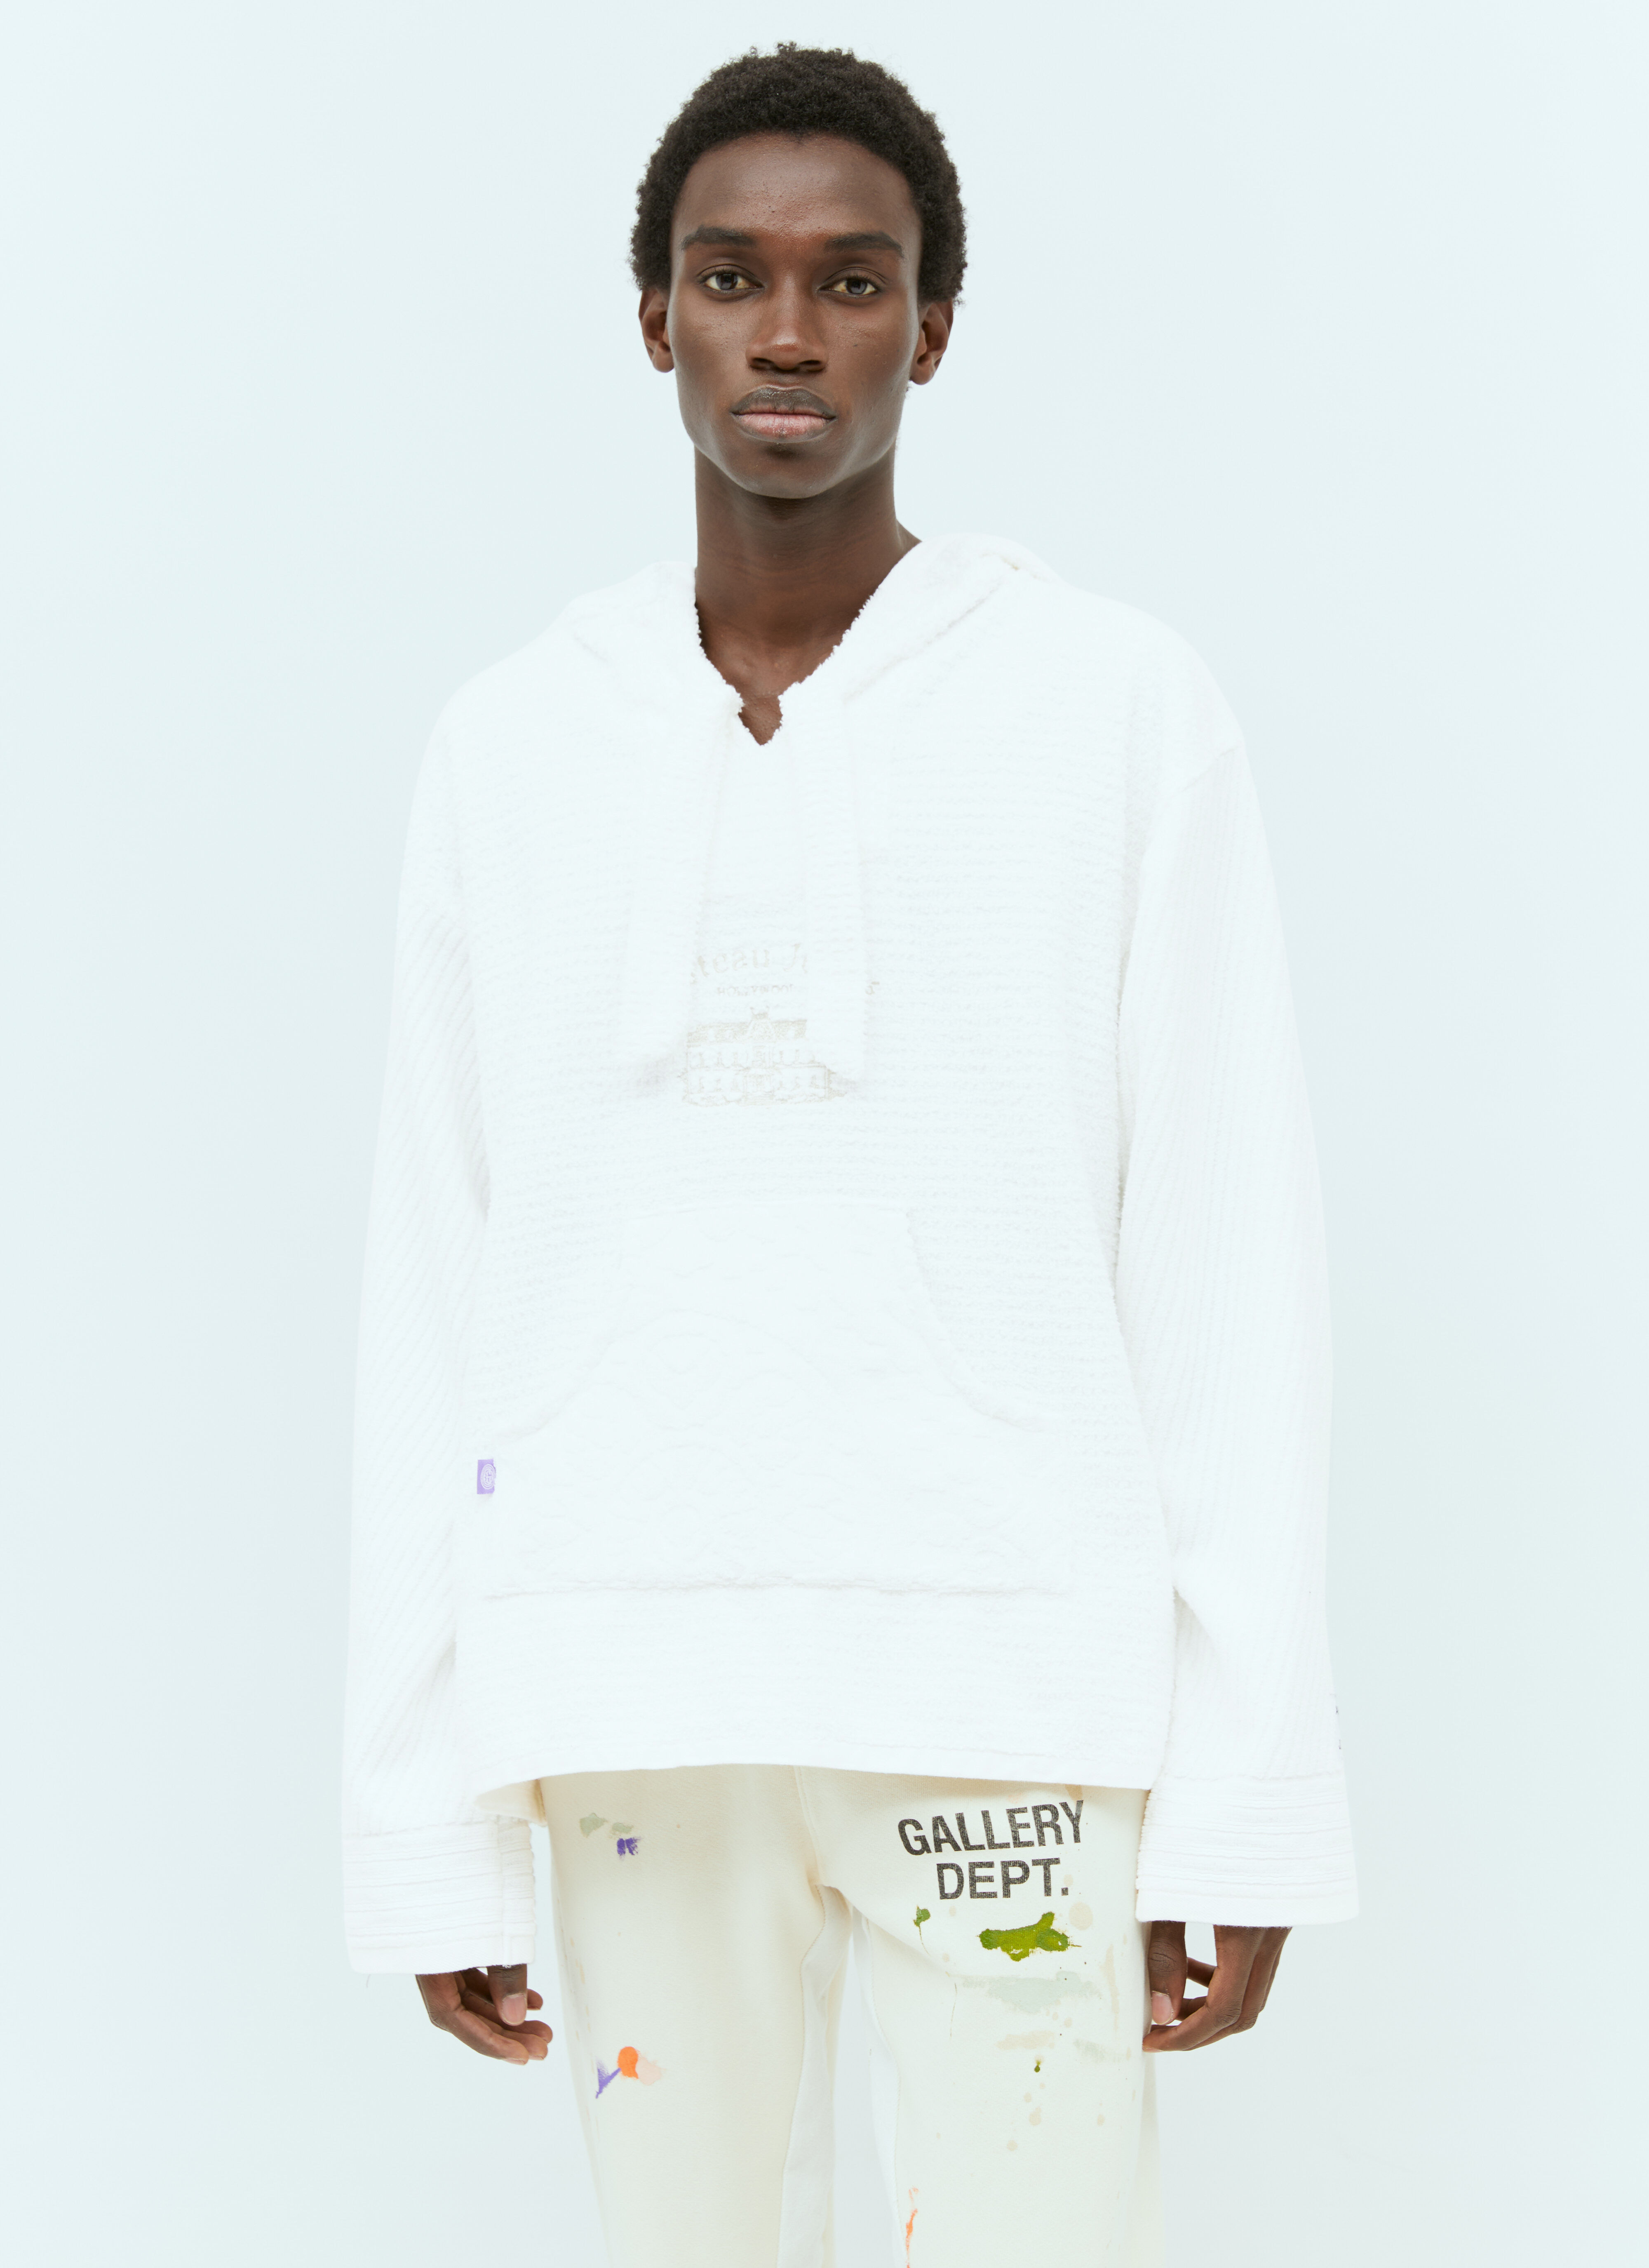 Gallery Dept. Beach Baja Hooded Sweatshirt White gdp0153021